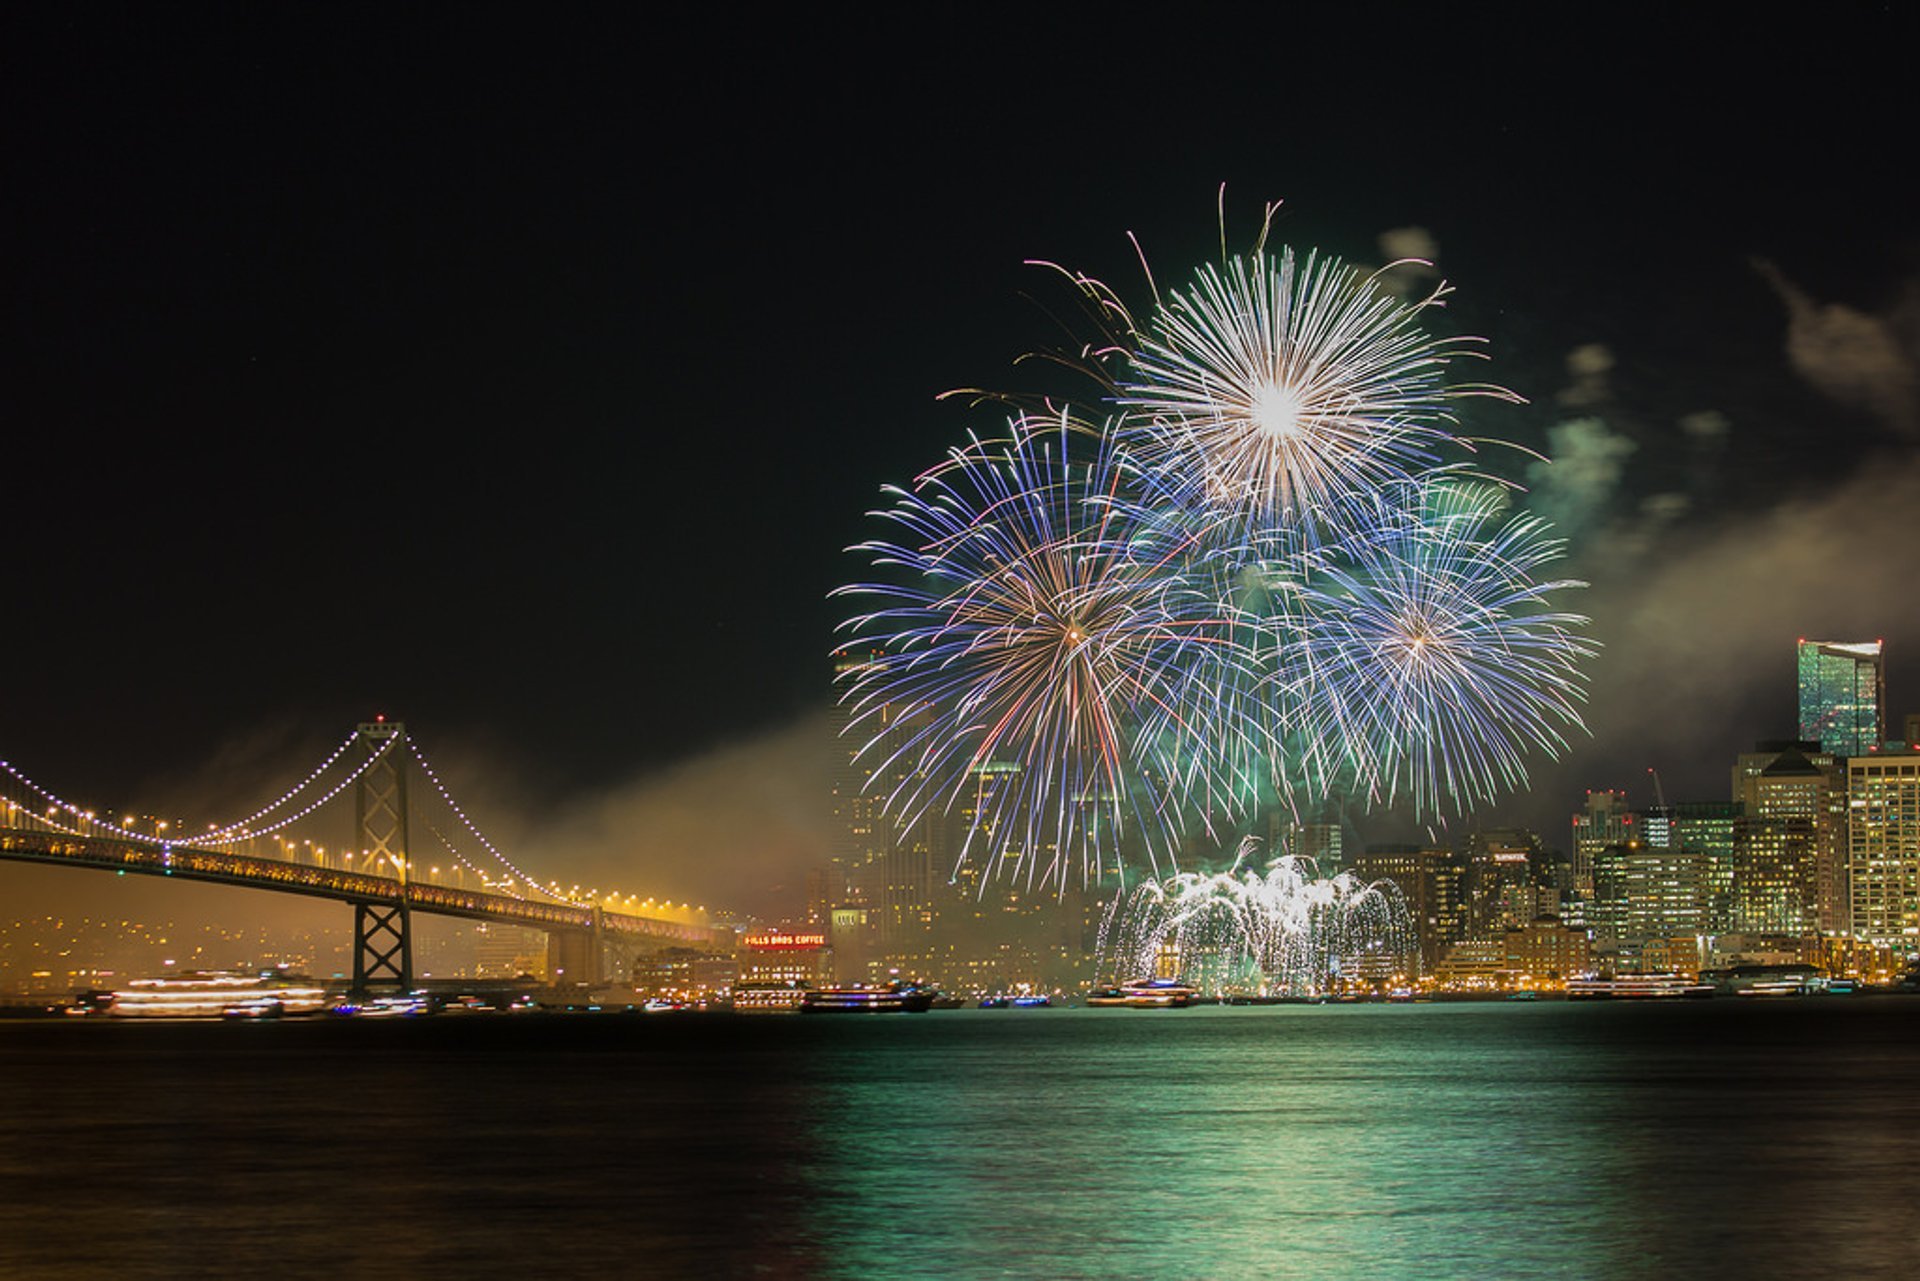 Il covid fa di nuovo paura: a San Francisco annullati i fuochi d'artificio di Capodanno